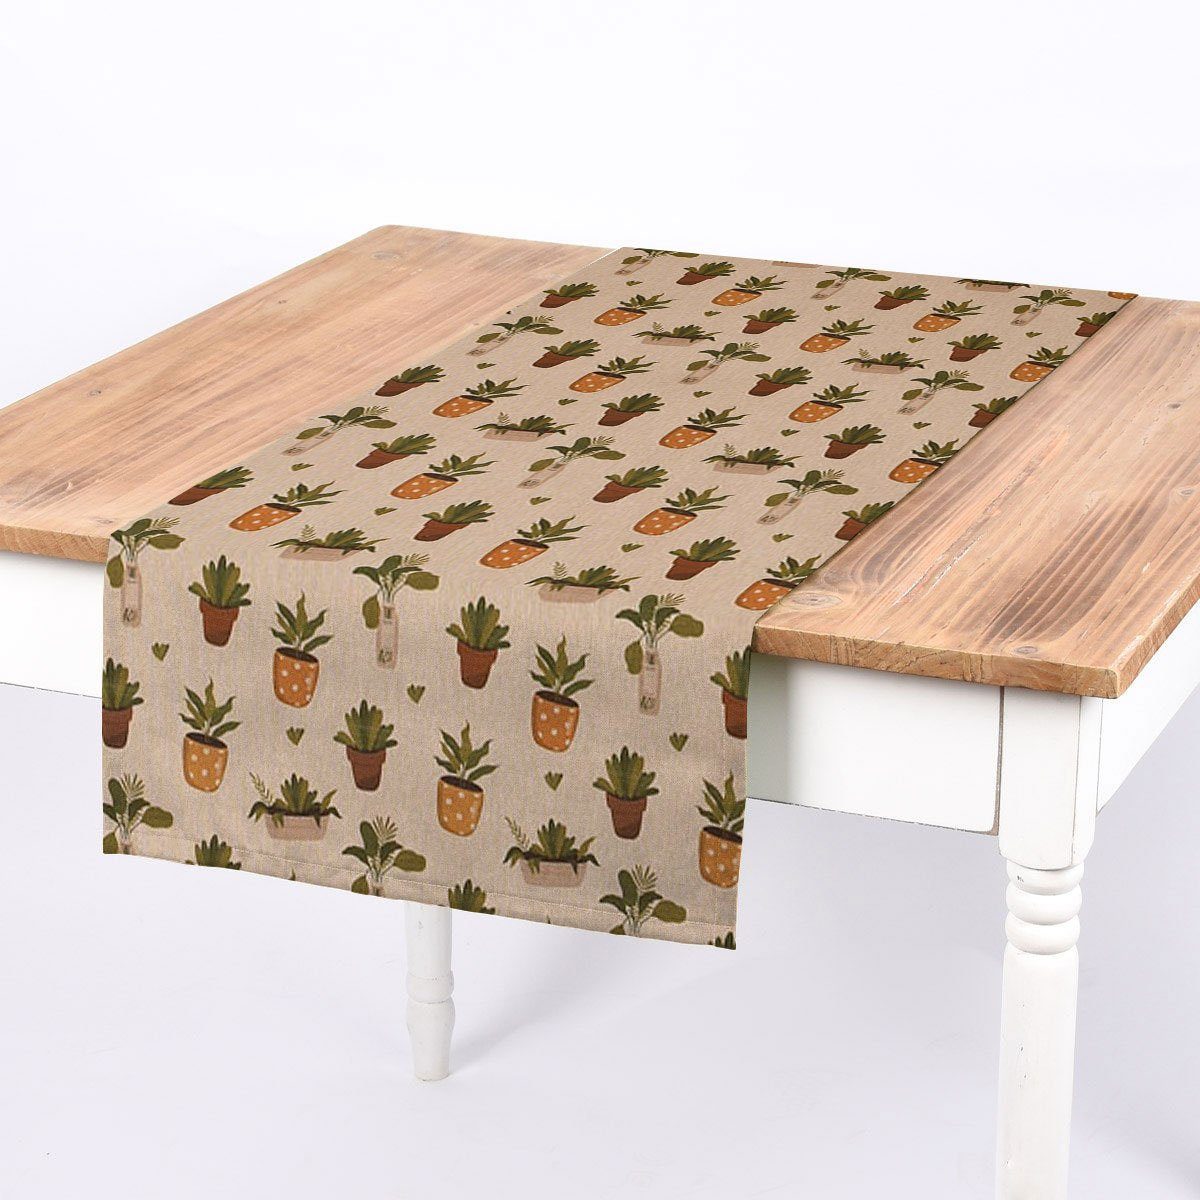 SCHÖNER LEBEN. Tischläufer SCHÖNER LEBEN. Tischläufer Blätter Pflanzen Vase Pflanztopf natur ge, handmade | Tischläufer